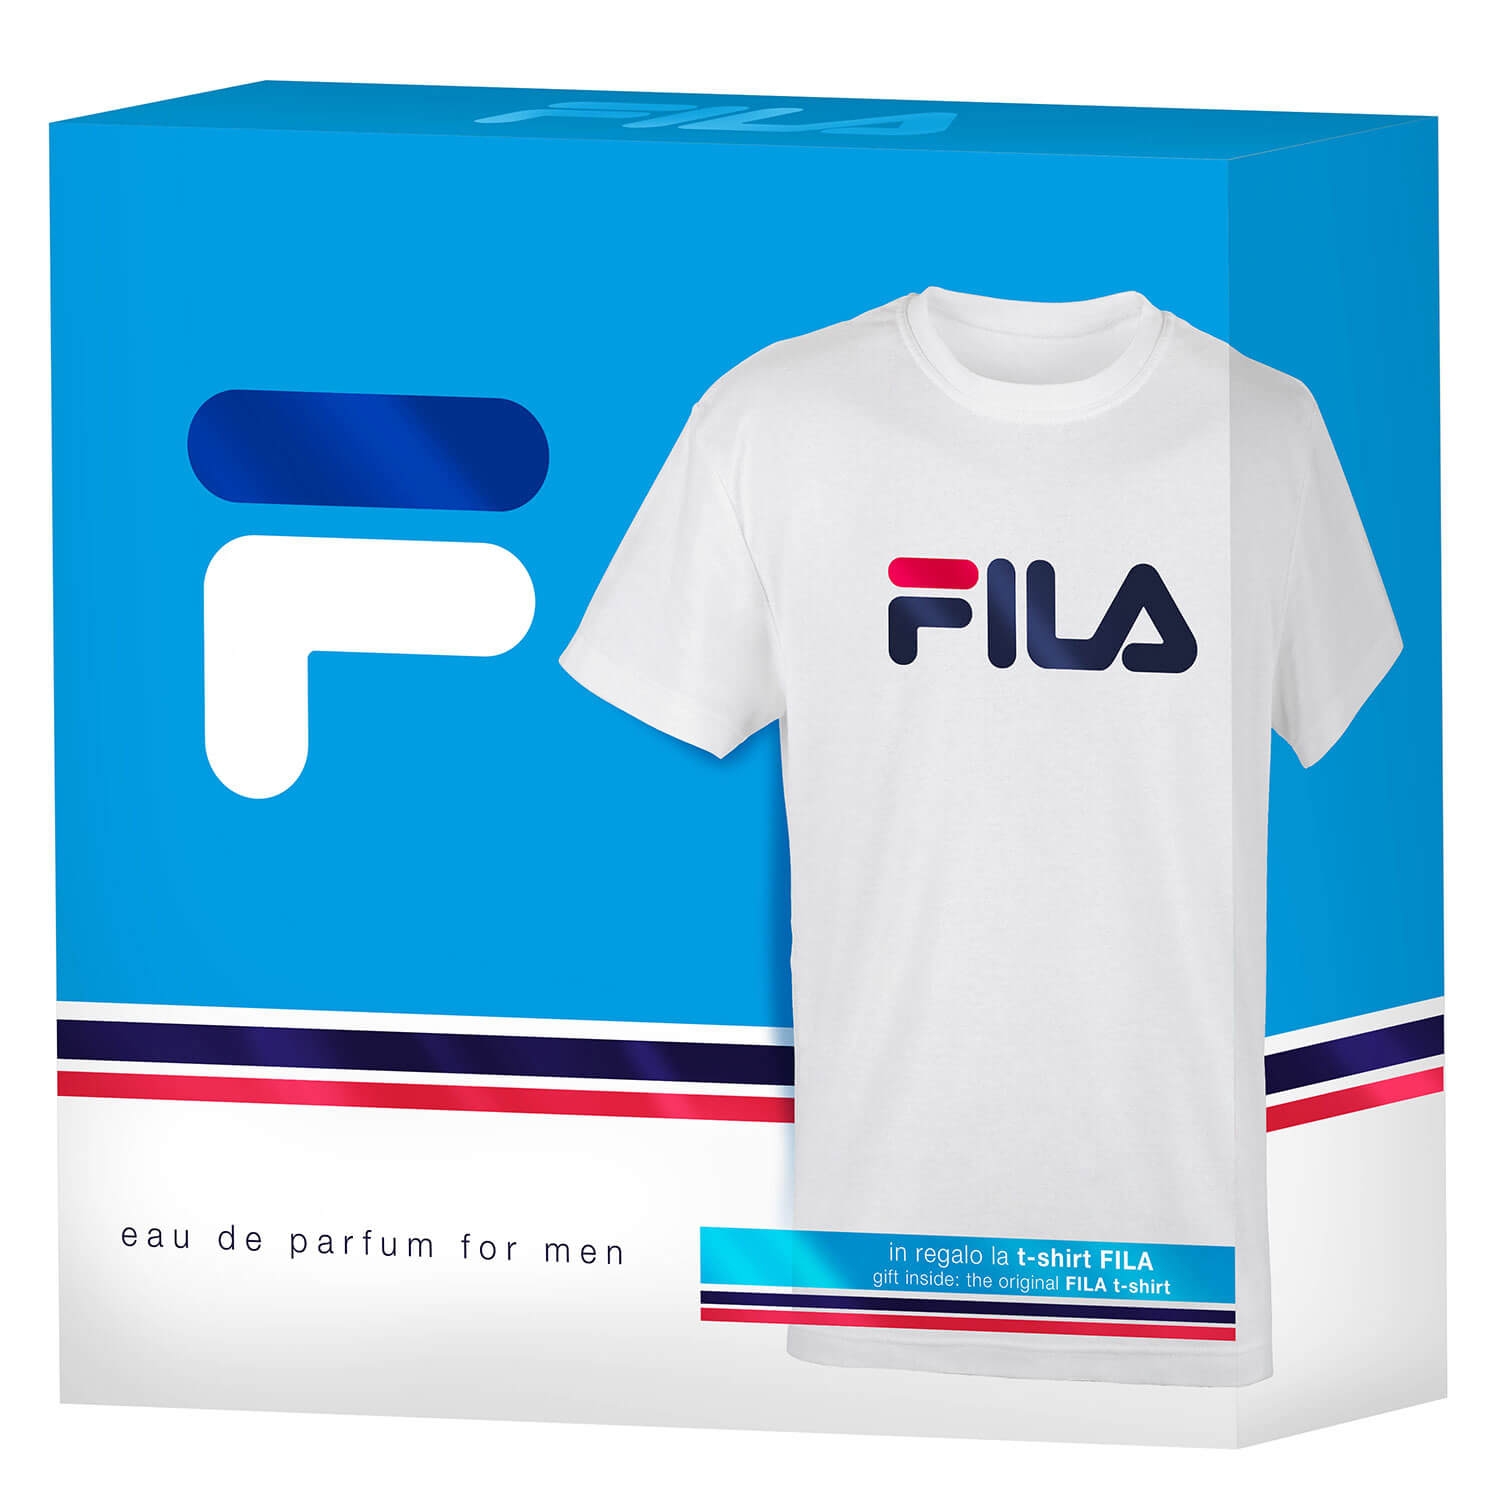 Produktbild von FILA - For Men Eau de Parfum Set